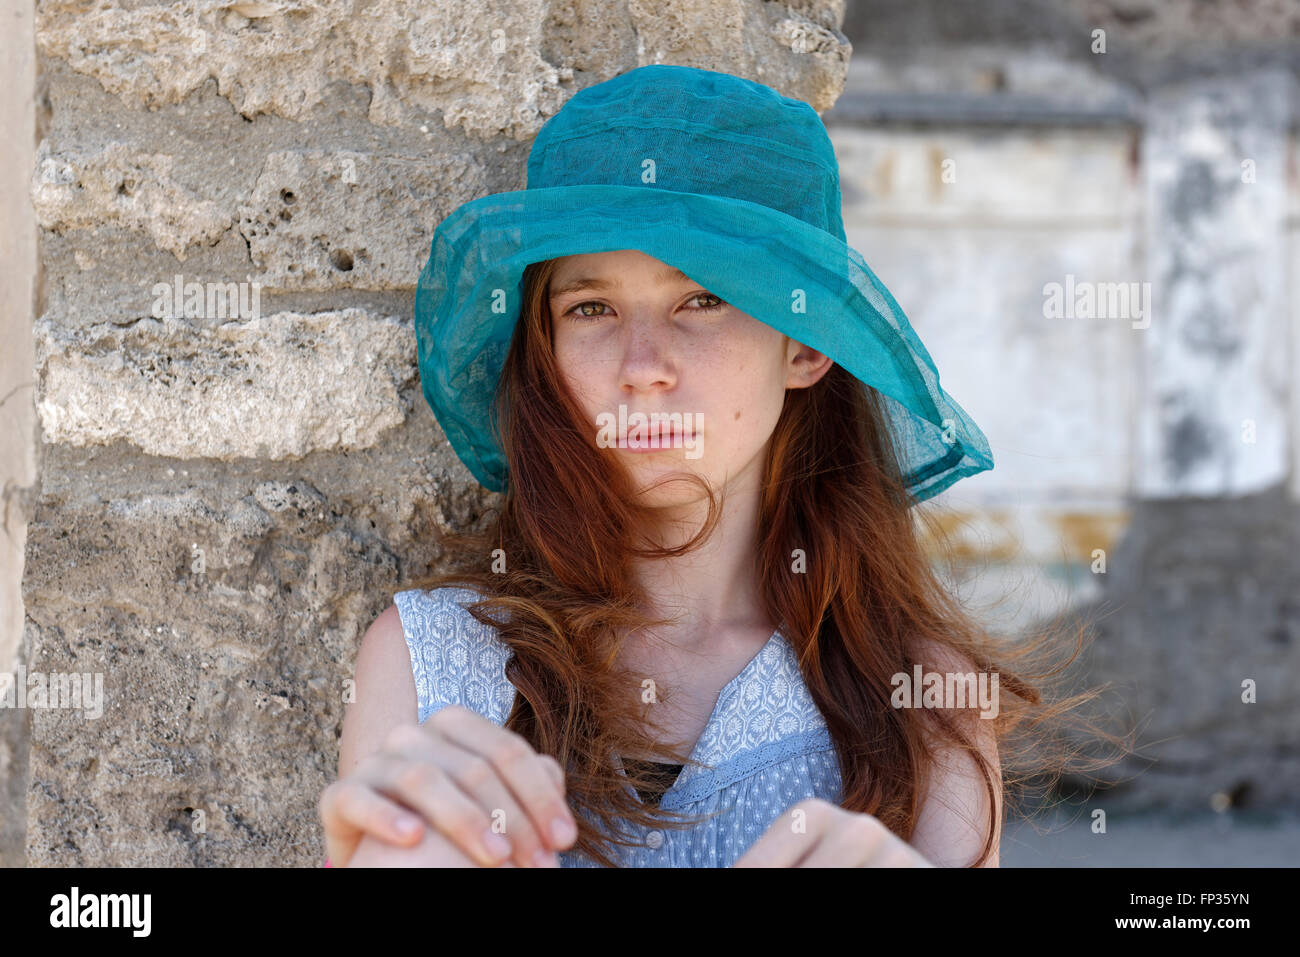 I Capelli rossi ragazza con un turchese sun hat cercando seriamente, ritratto, Italia Foto Stock